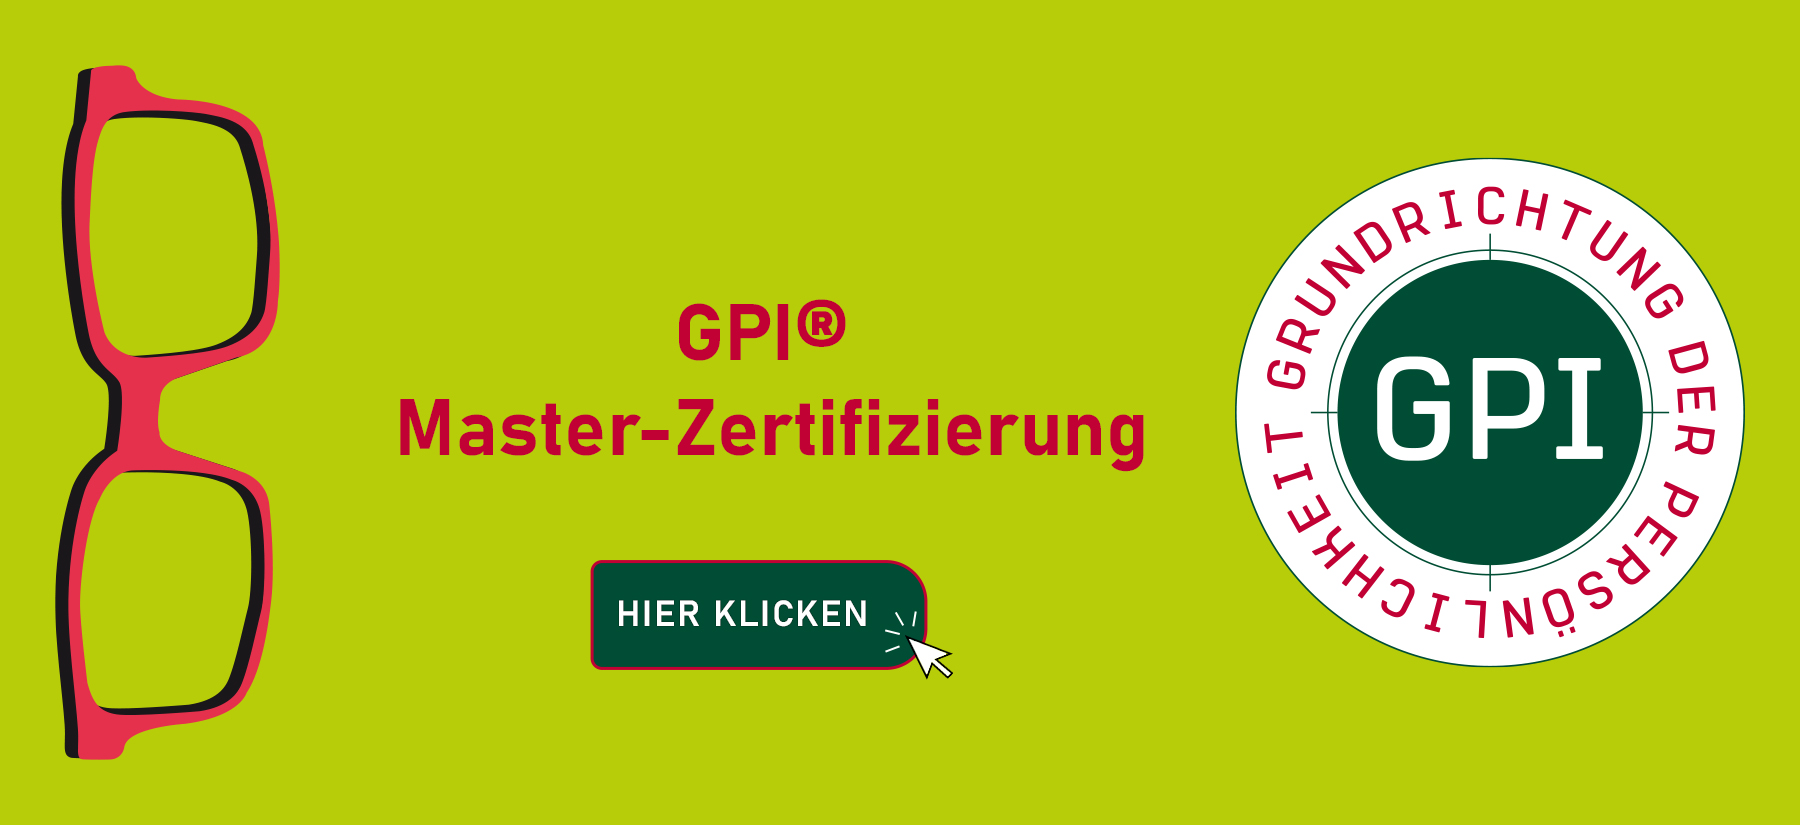 GPI Master Zertifizierung